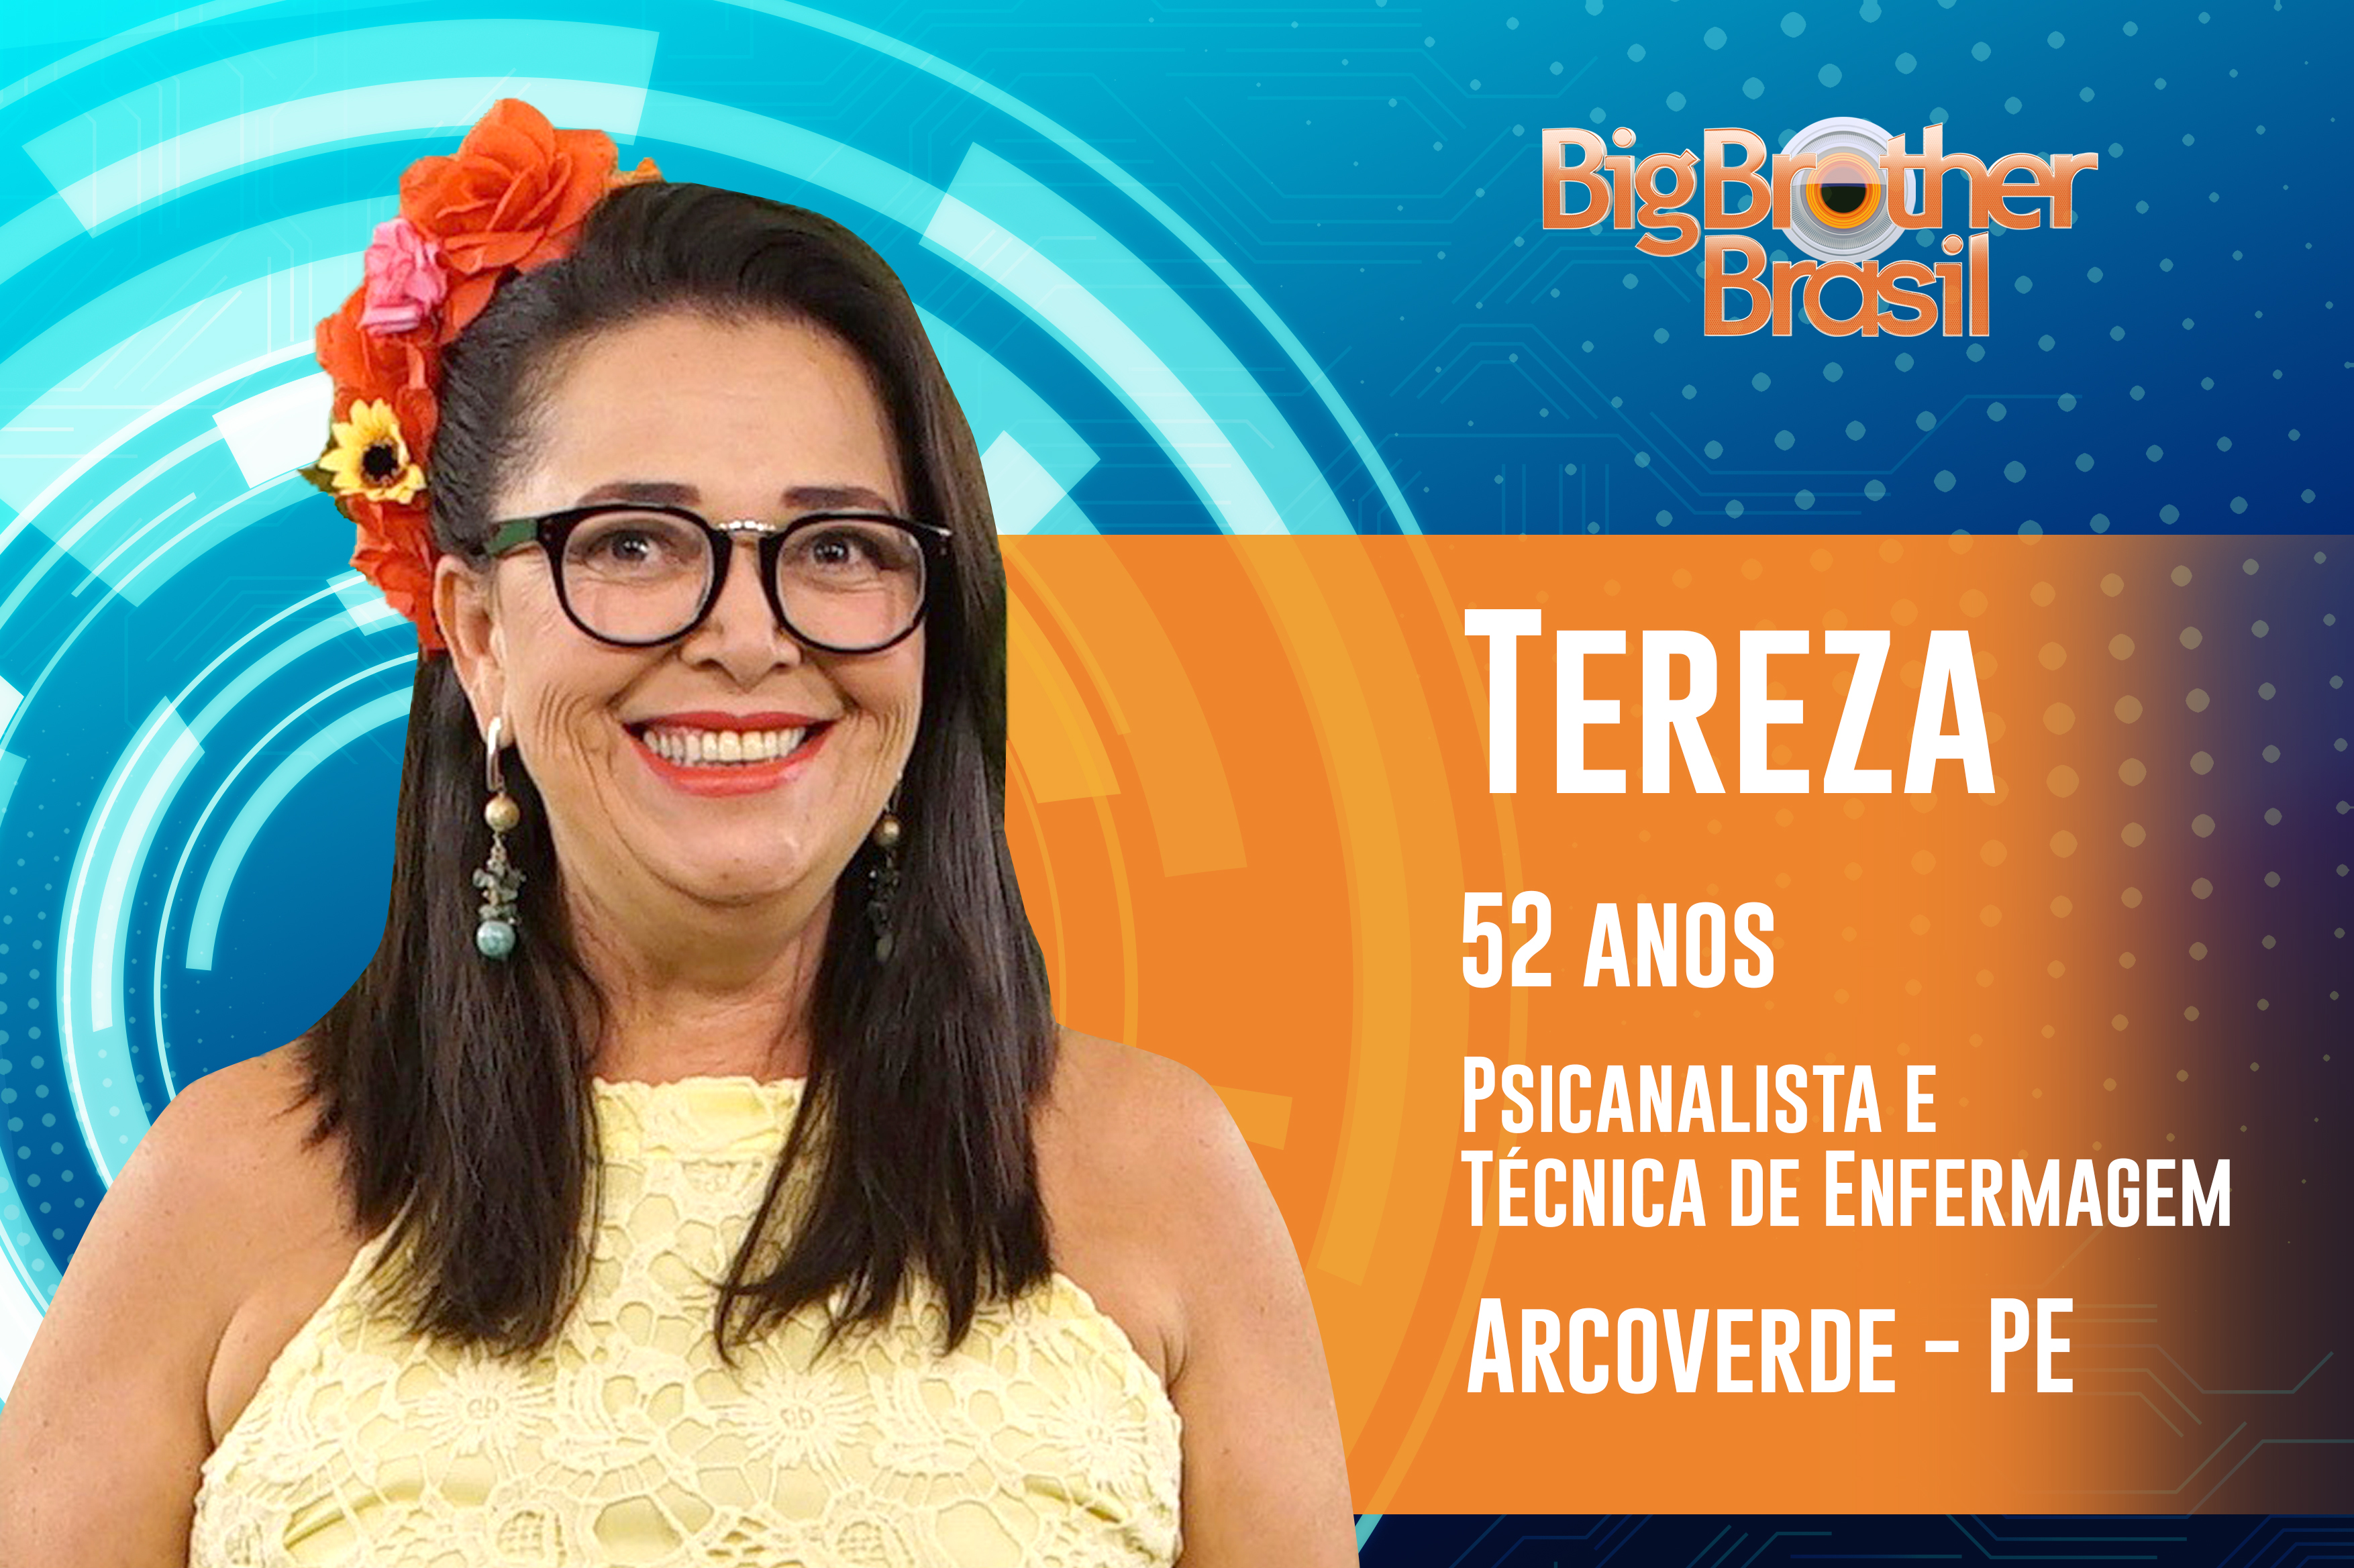 Tereza, participante do BBB19